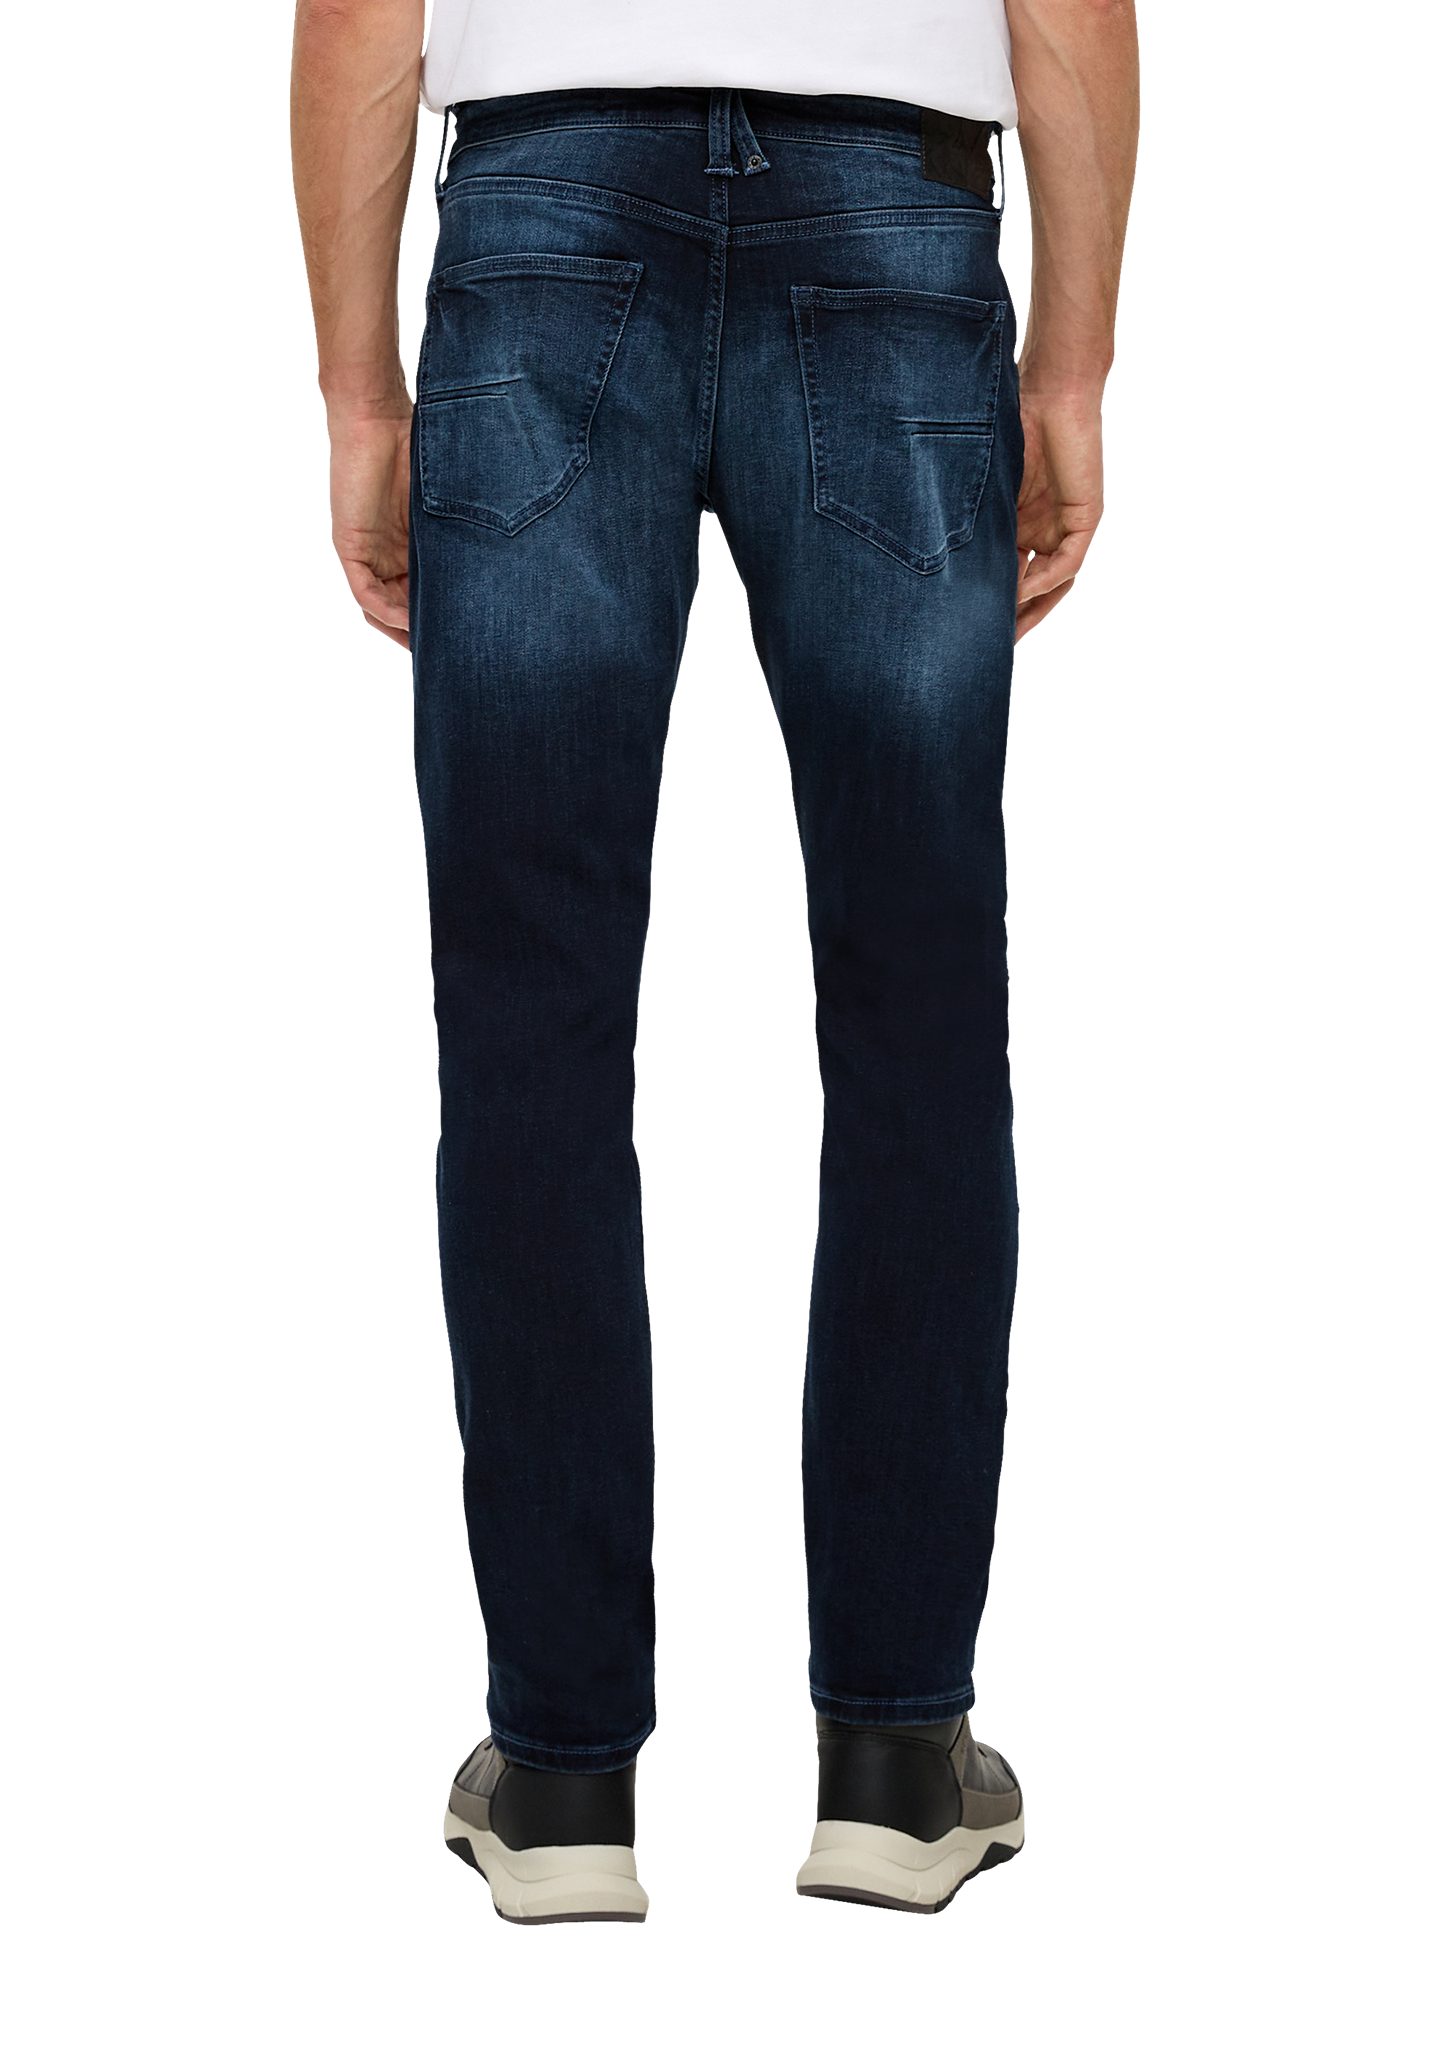 Rise / / tiefblau Waschung Tapered Regular Leder-Patch, Mid Fit Leg Stoffhose s.Oliver / / Jeans 5-Pocket-Stil